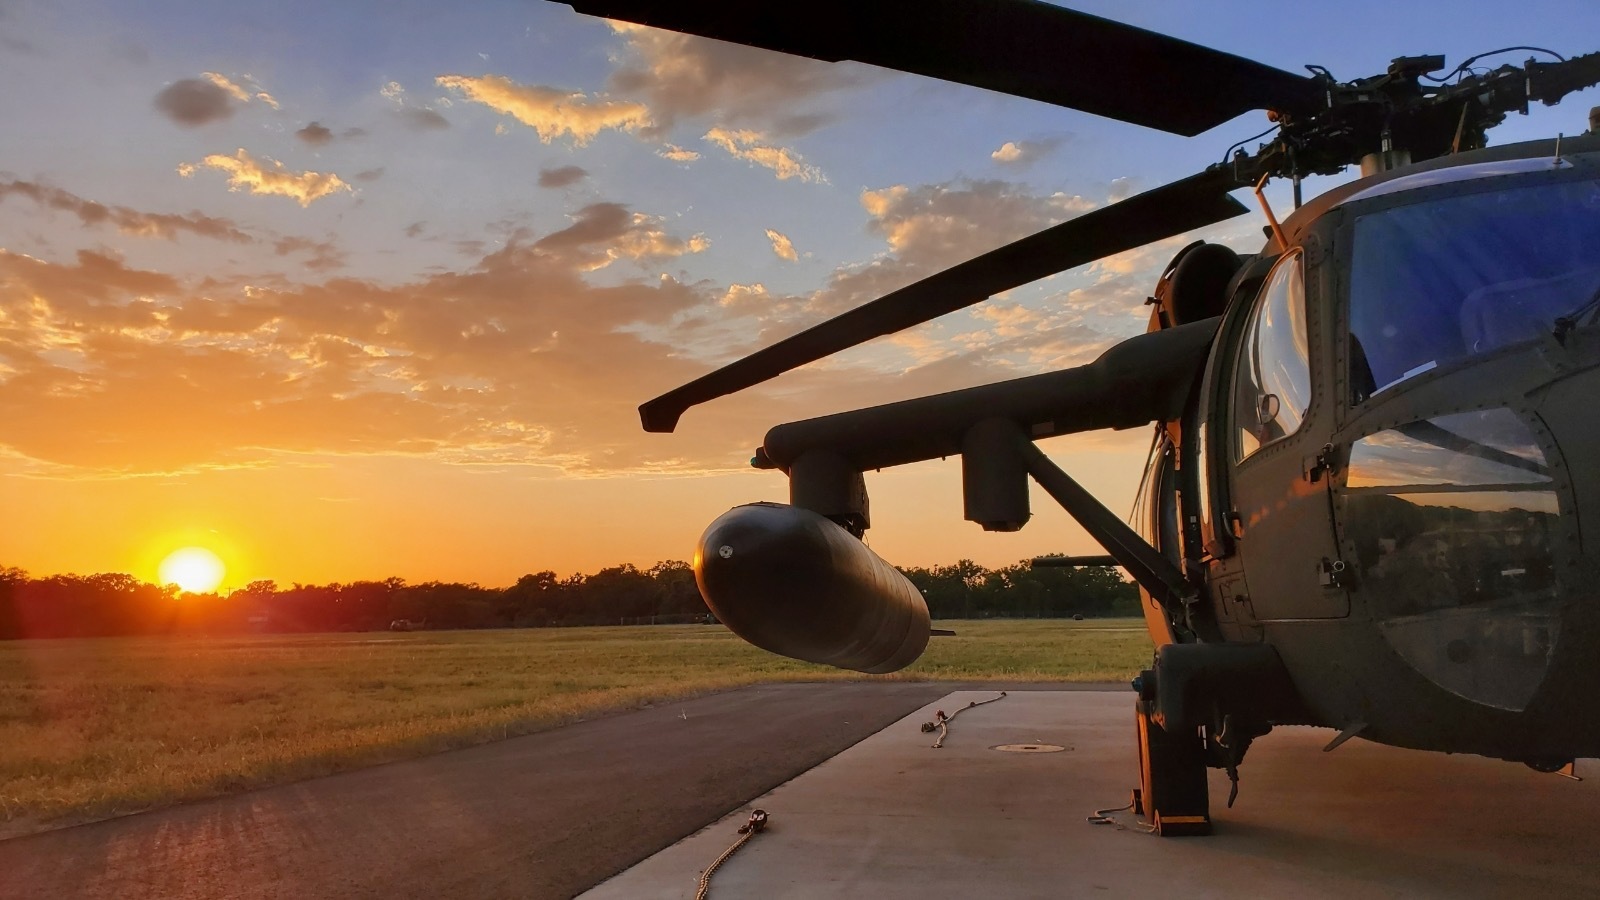 UH-60 Blackhawk on landing pad at sunrise.